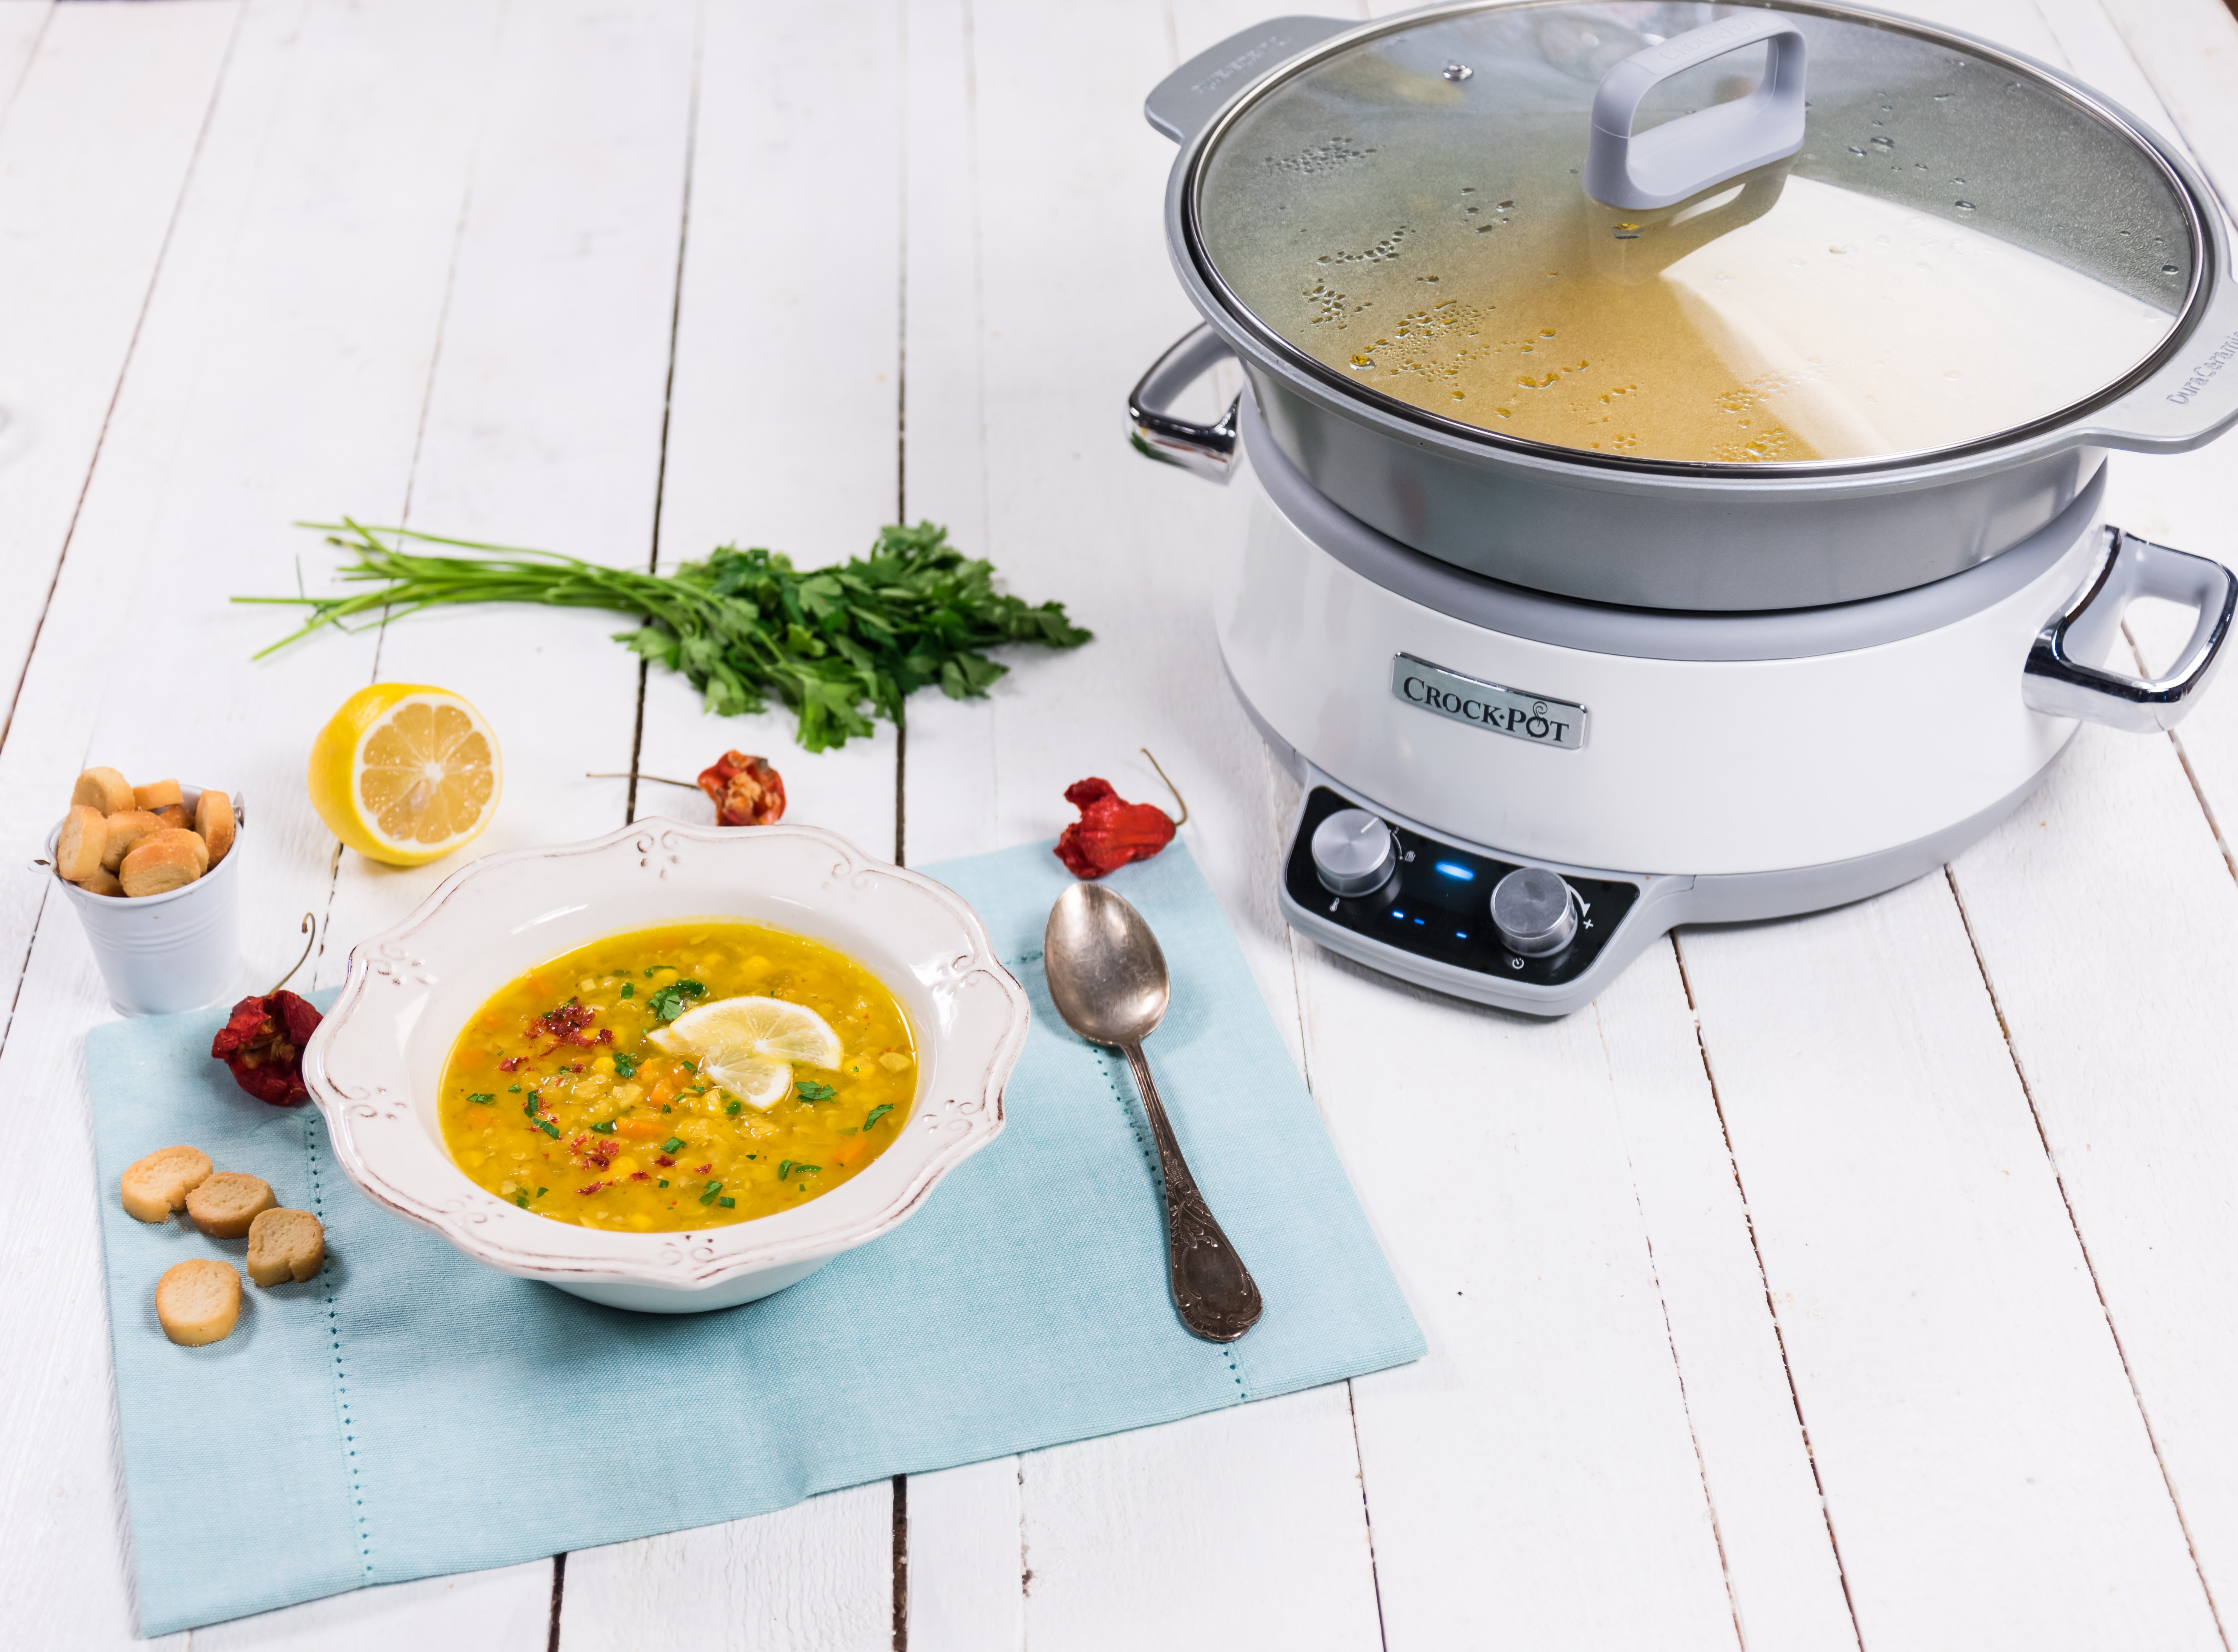 Supa picanta de linte la slow cooker Crock-Pot